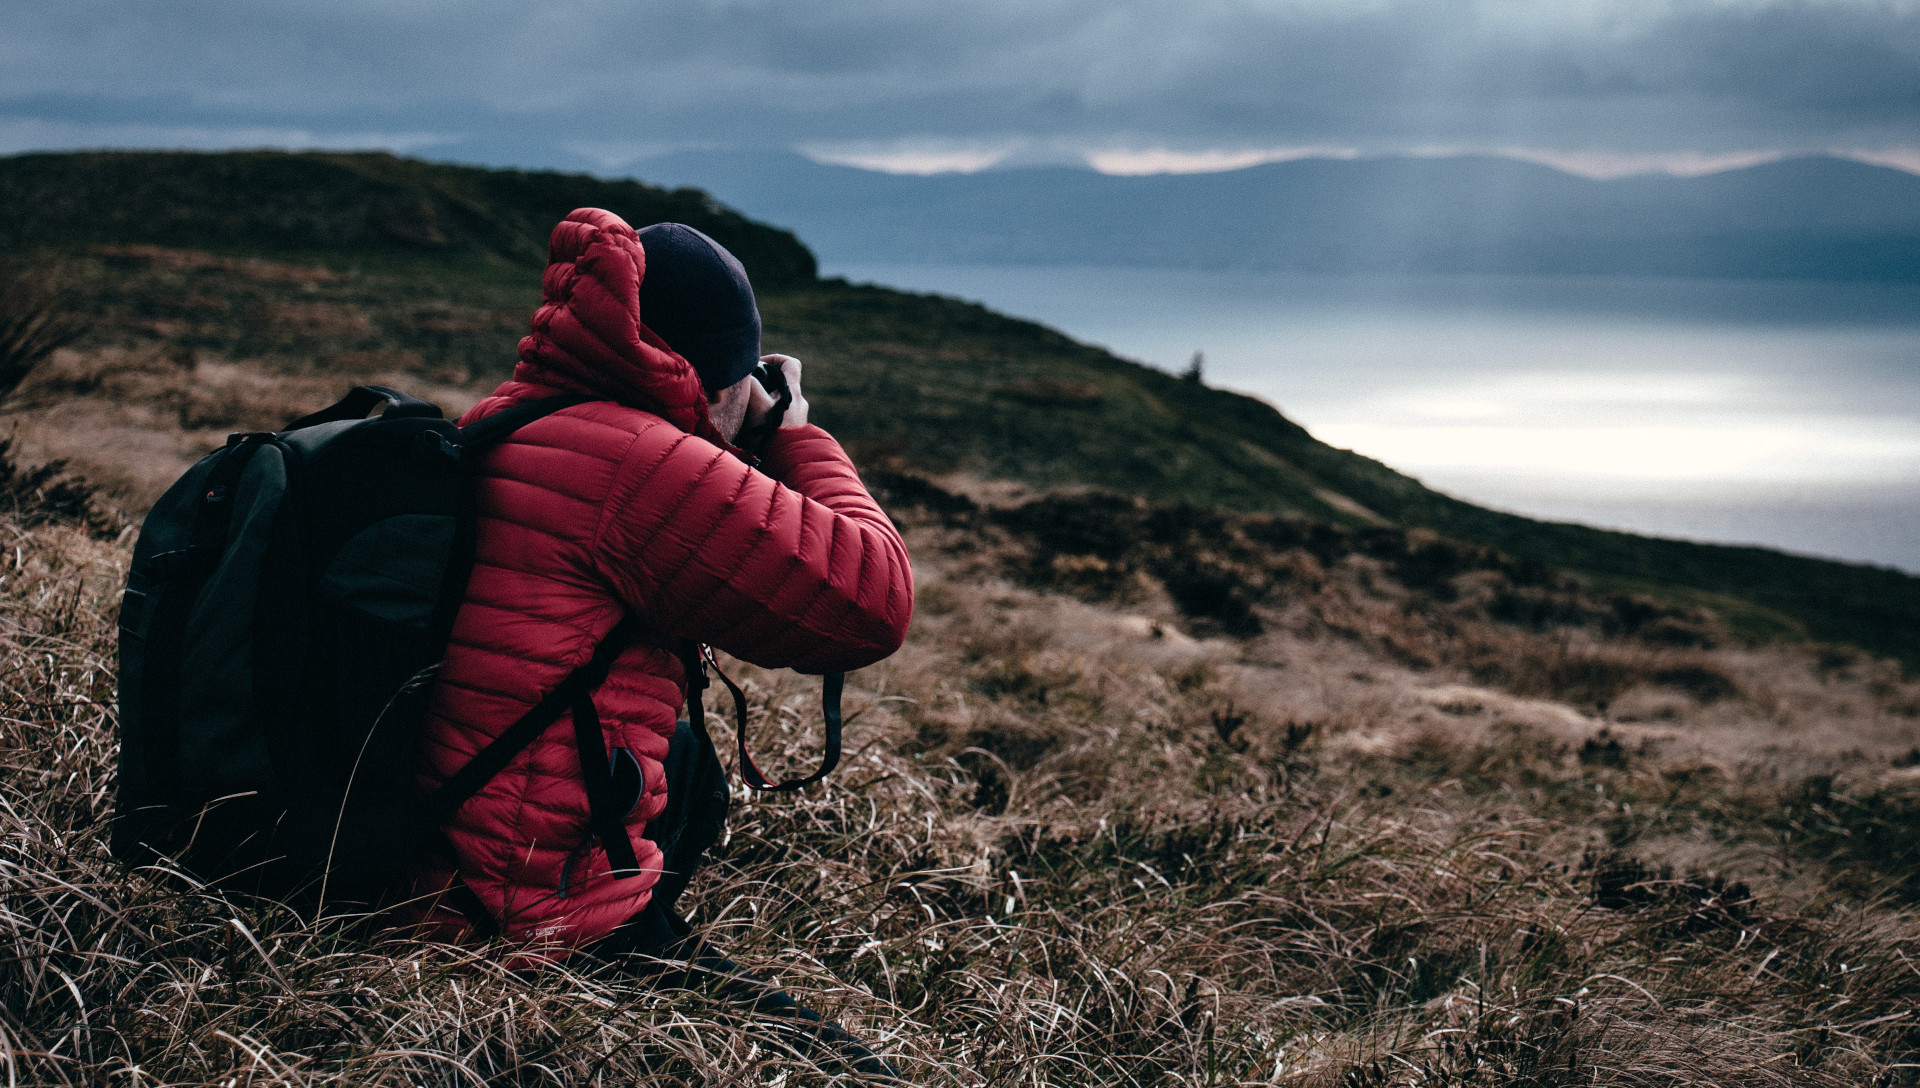 Foto einer Person in roter Jacke, welche die Landschaft fotografiert.